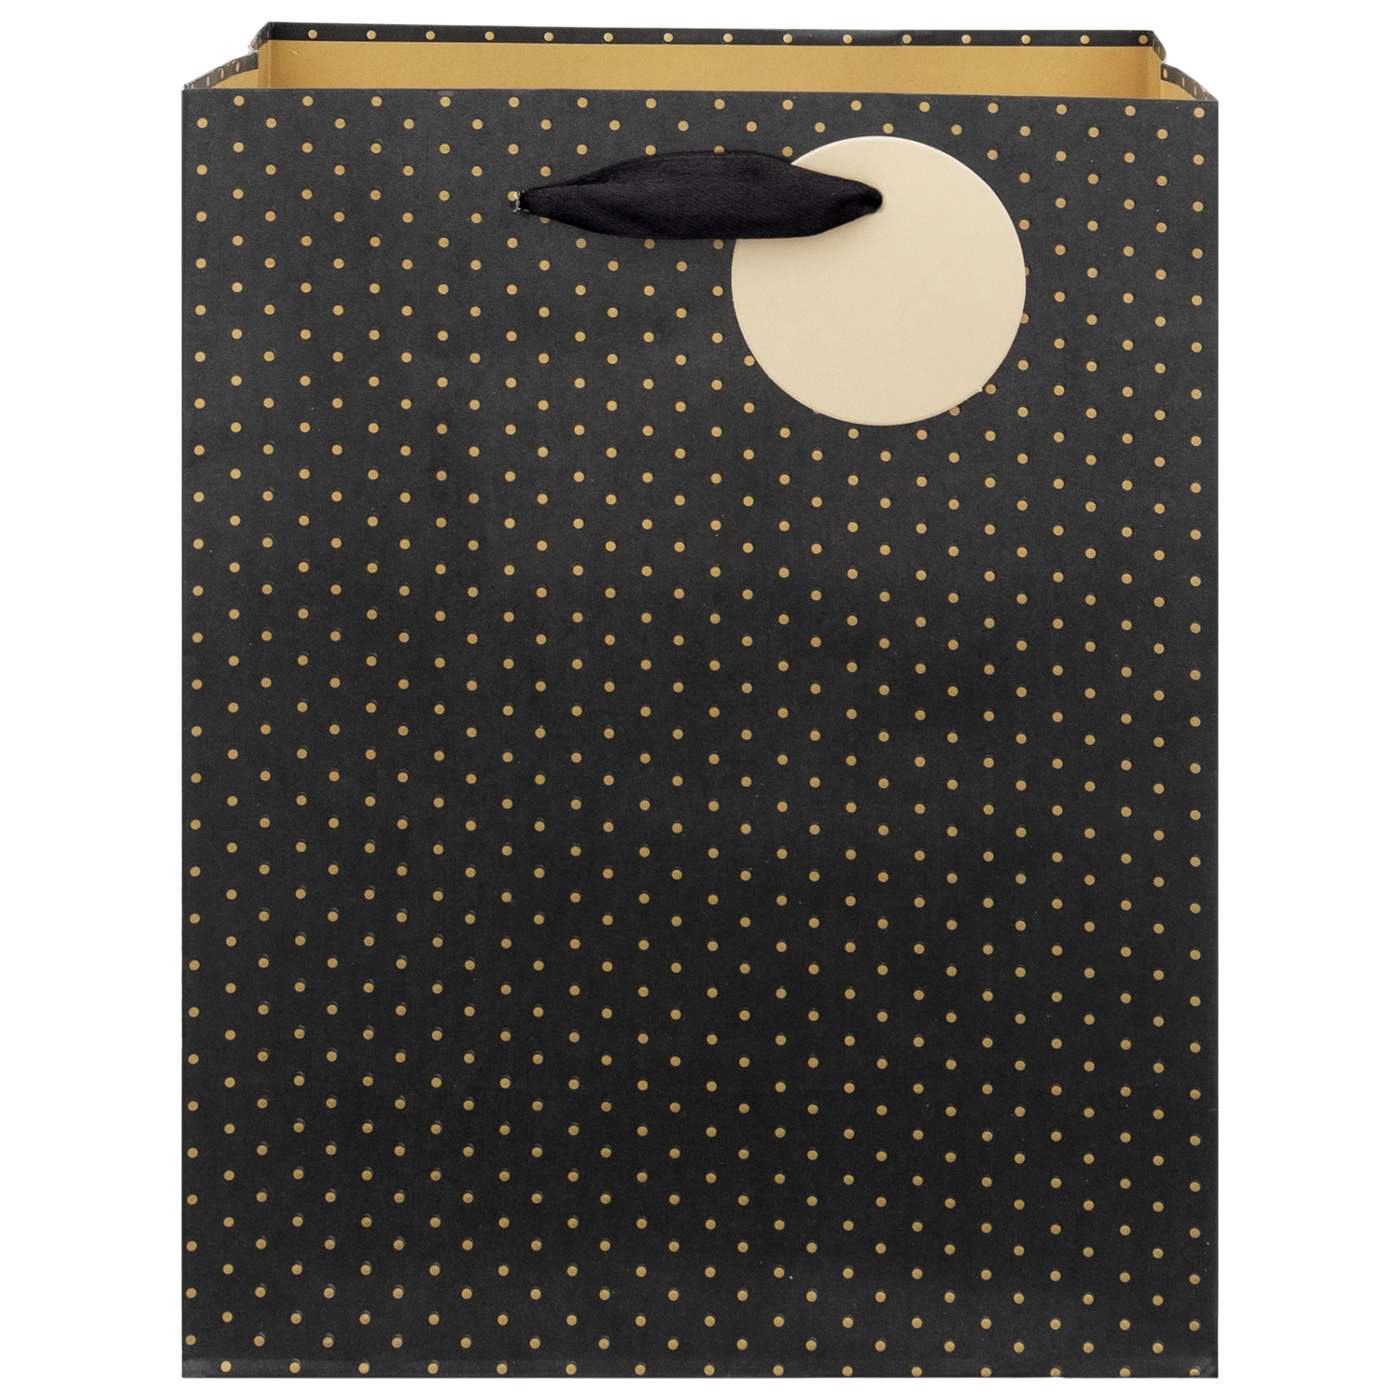 IG Design Gold Dots Black Paper Gift Bag; image 1 of 2